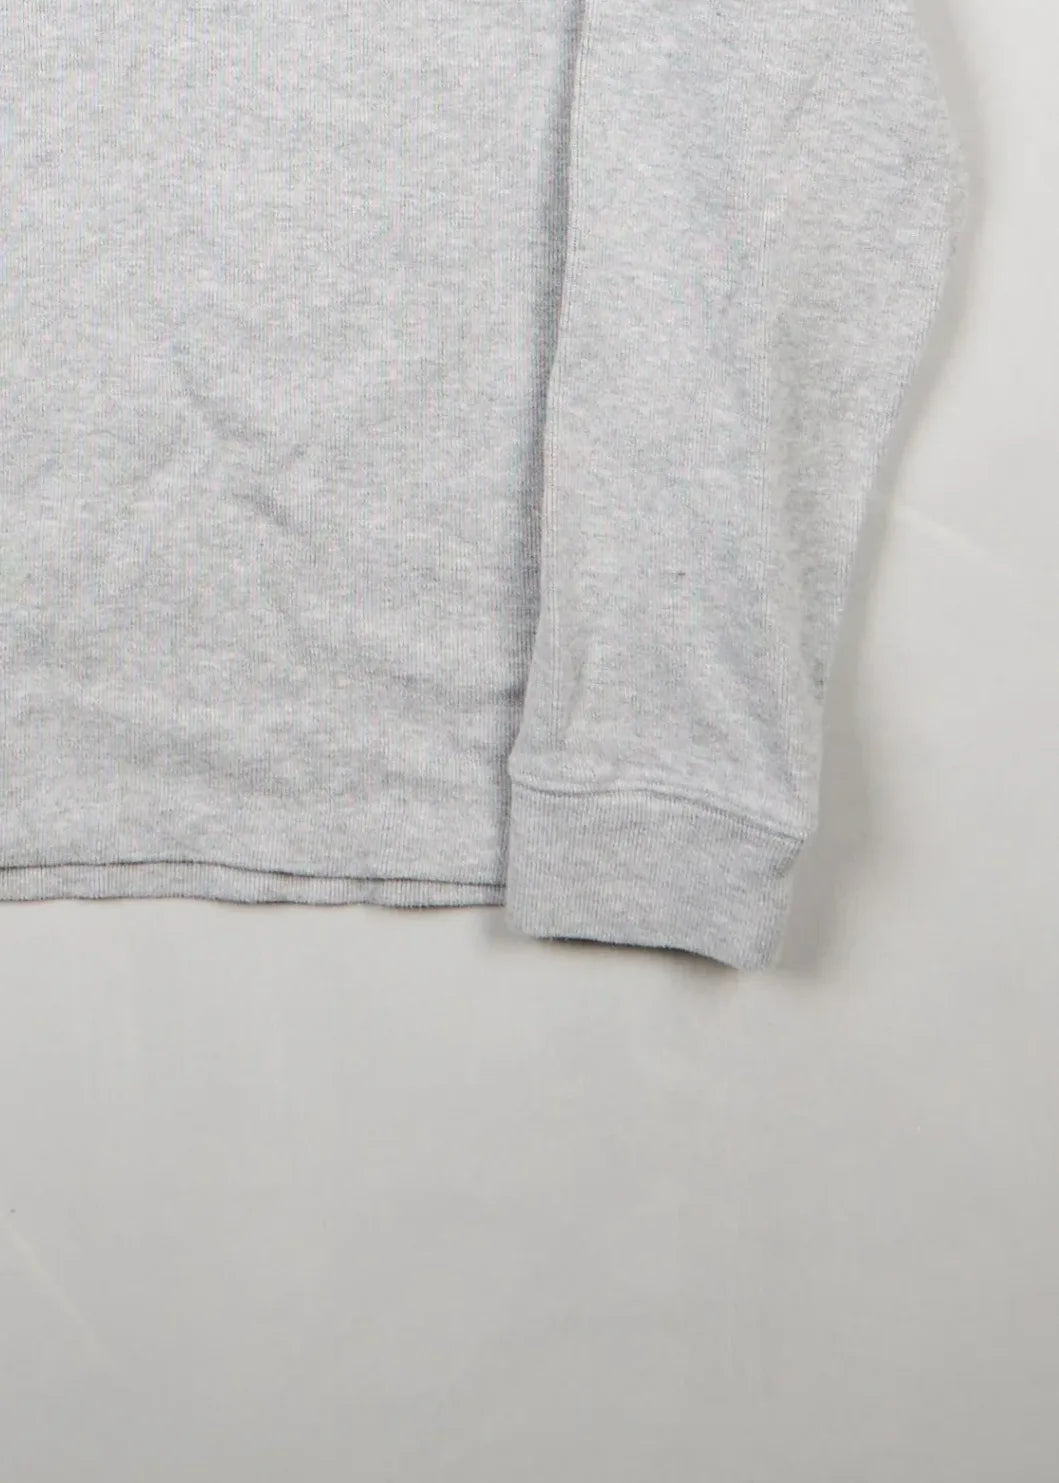 Ralph Lauren - Sweater (L) Bottom Right